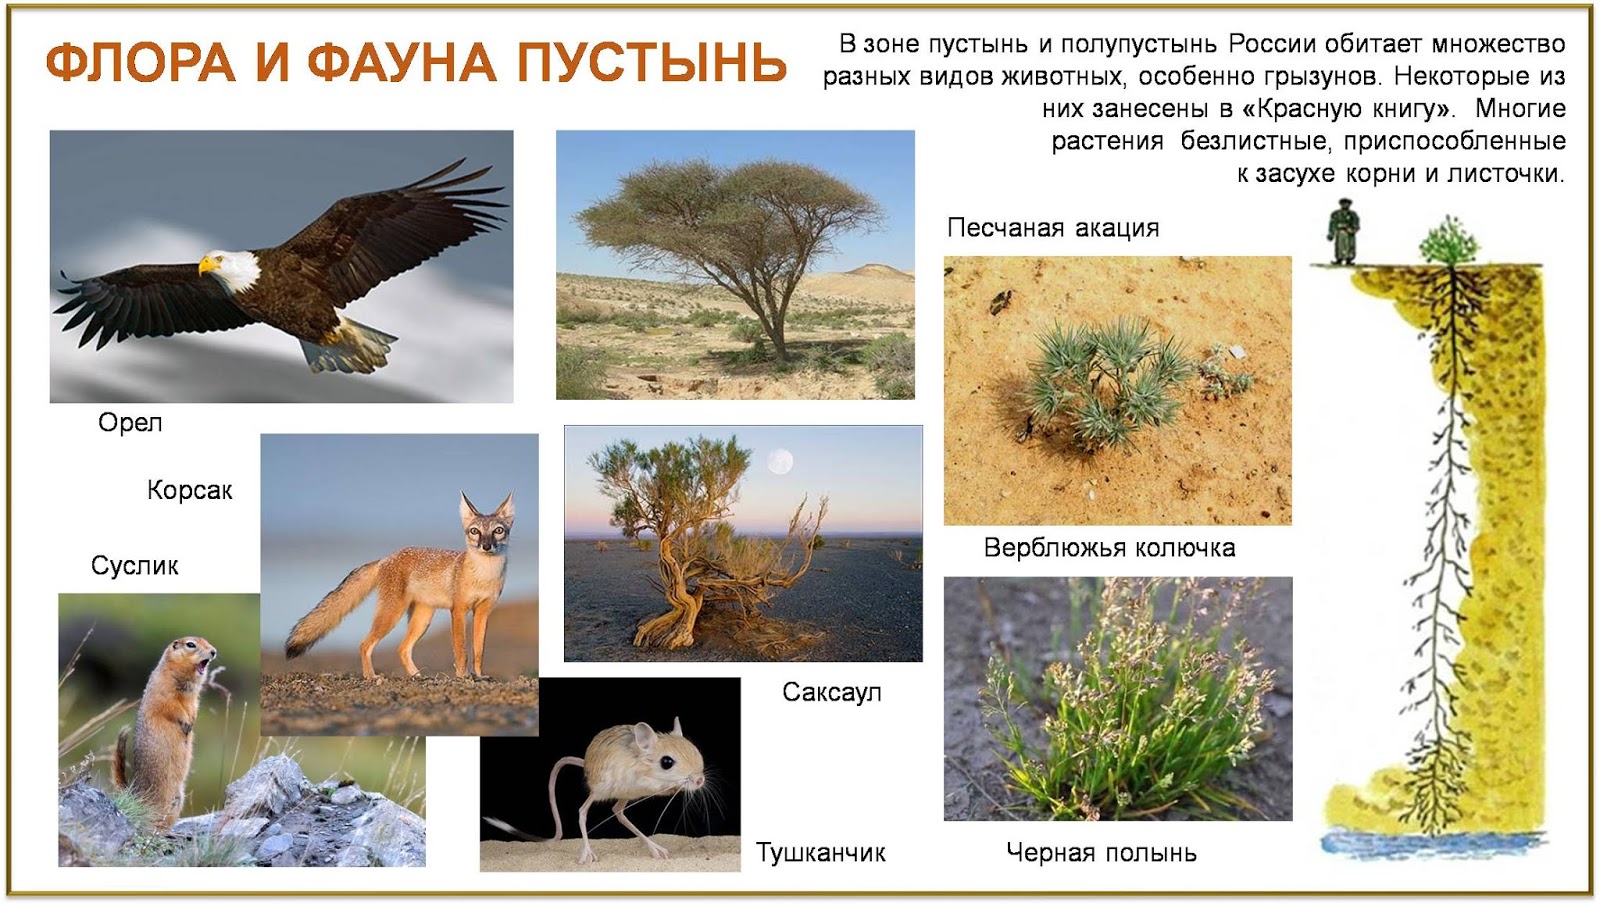 Живые организмы в степи. Фауна пустынь и полупустынь в России. Зона полупустынь и пустынь растительный и животный мир.